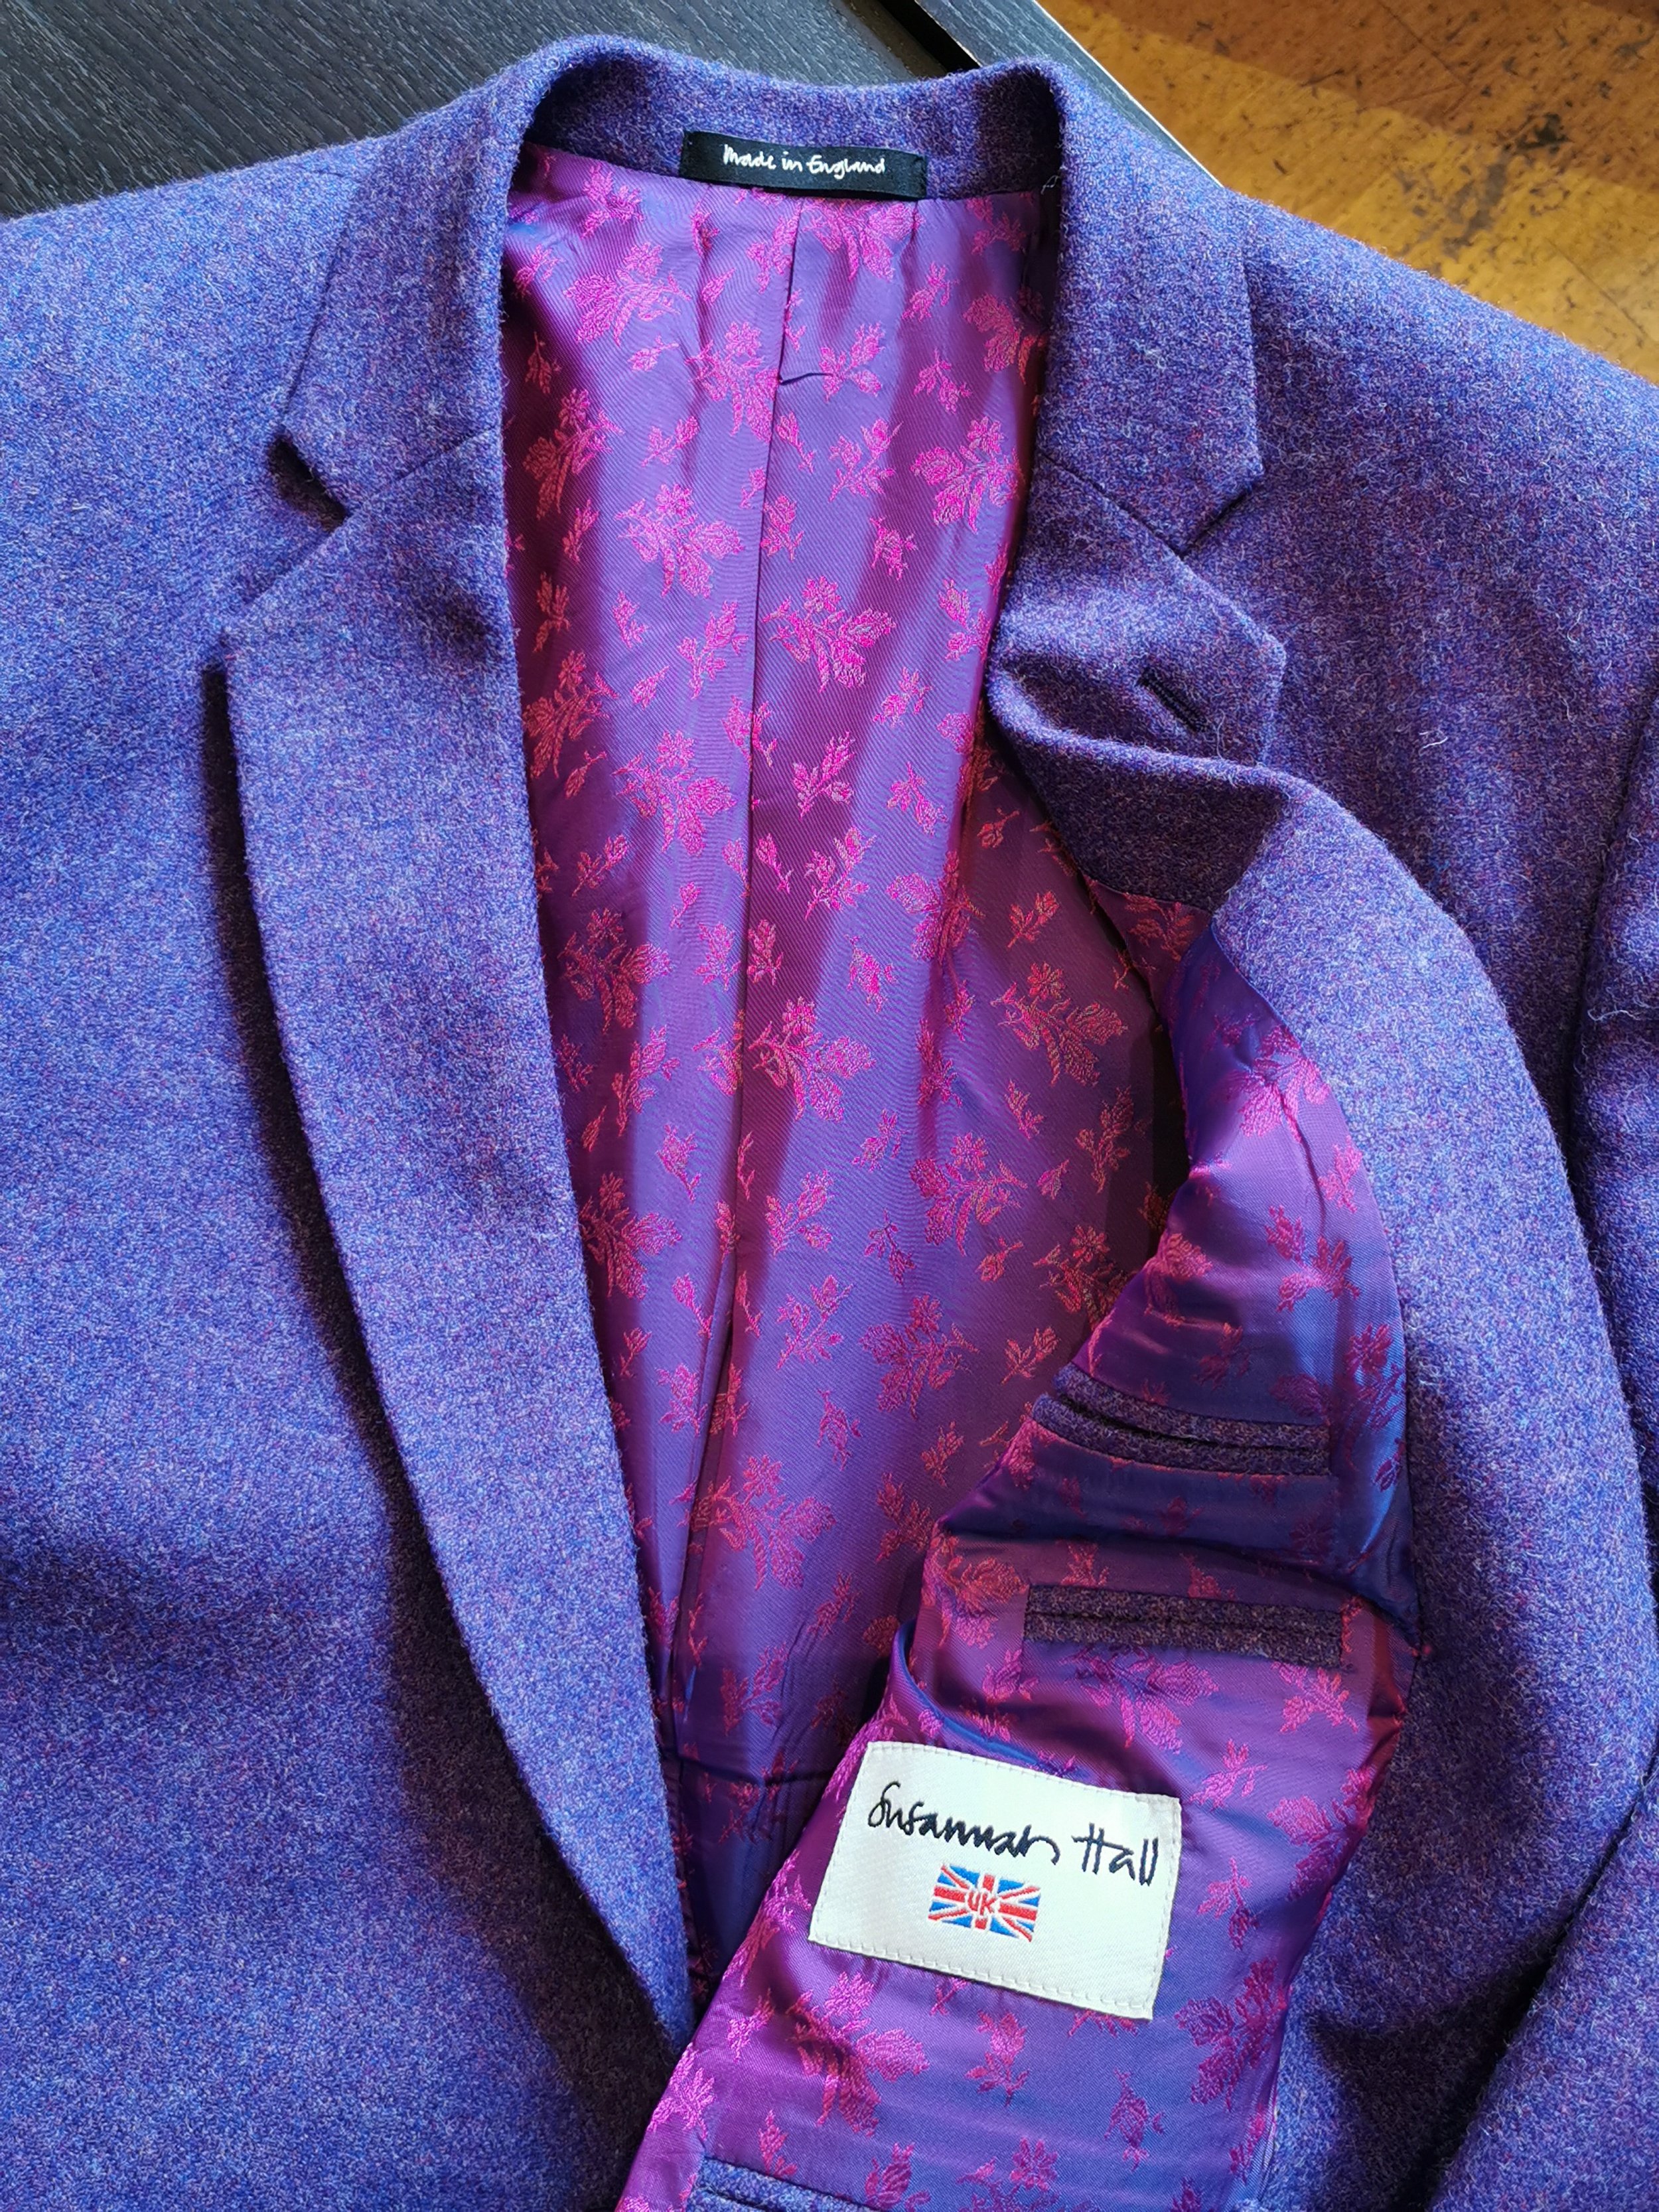 bespoke-purple-tweed-jacket-style-made-uk.jpg